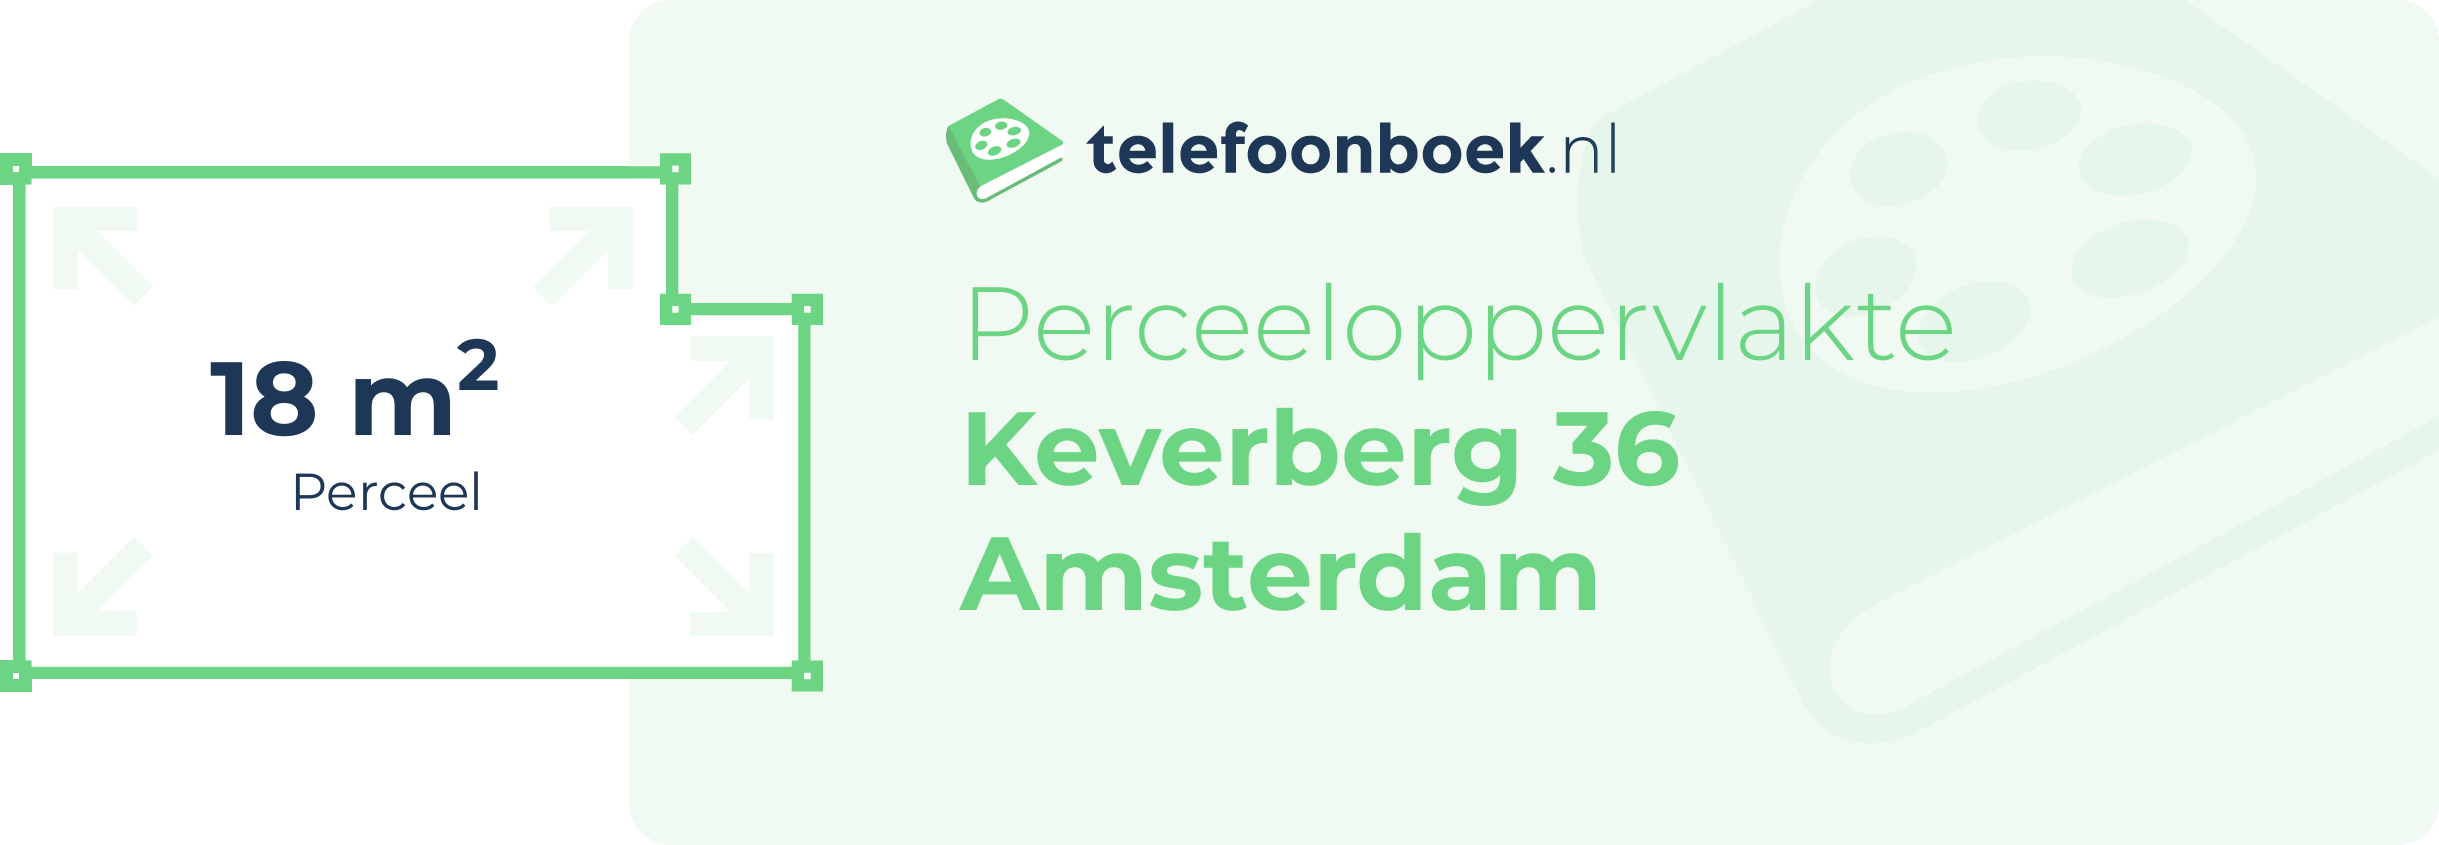 Perceeloppervlakte Keverberg 36 Amsterdam